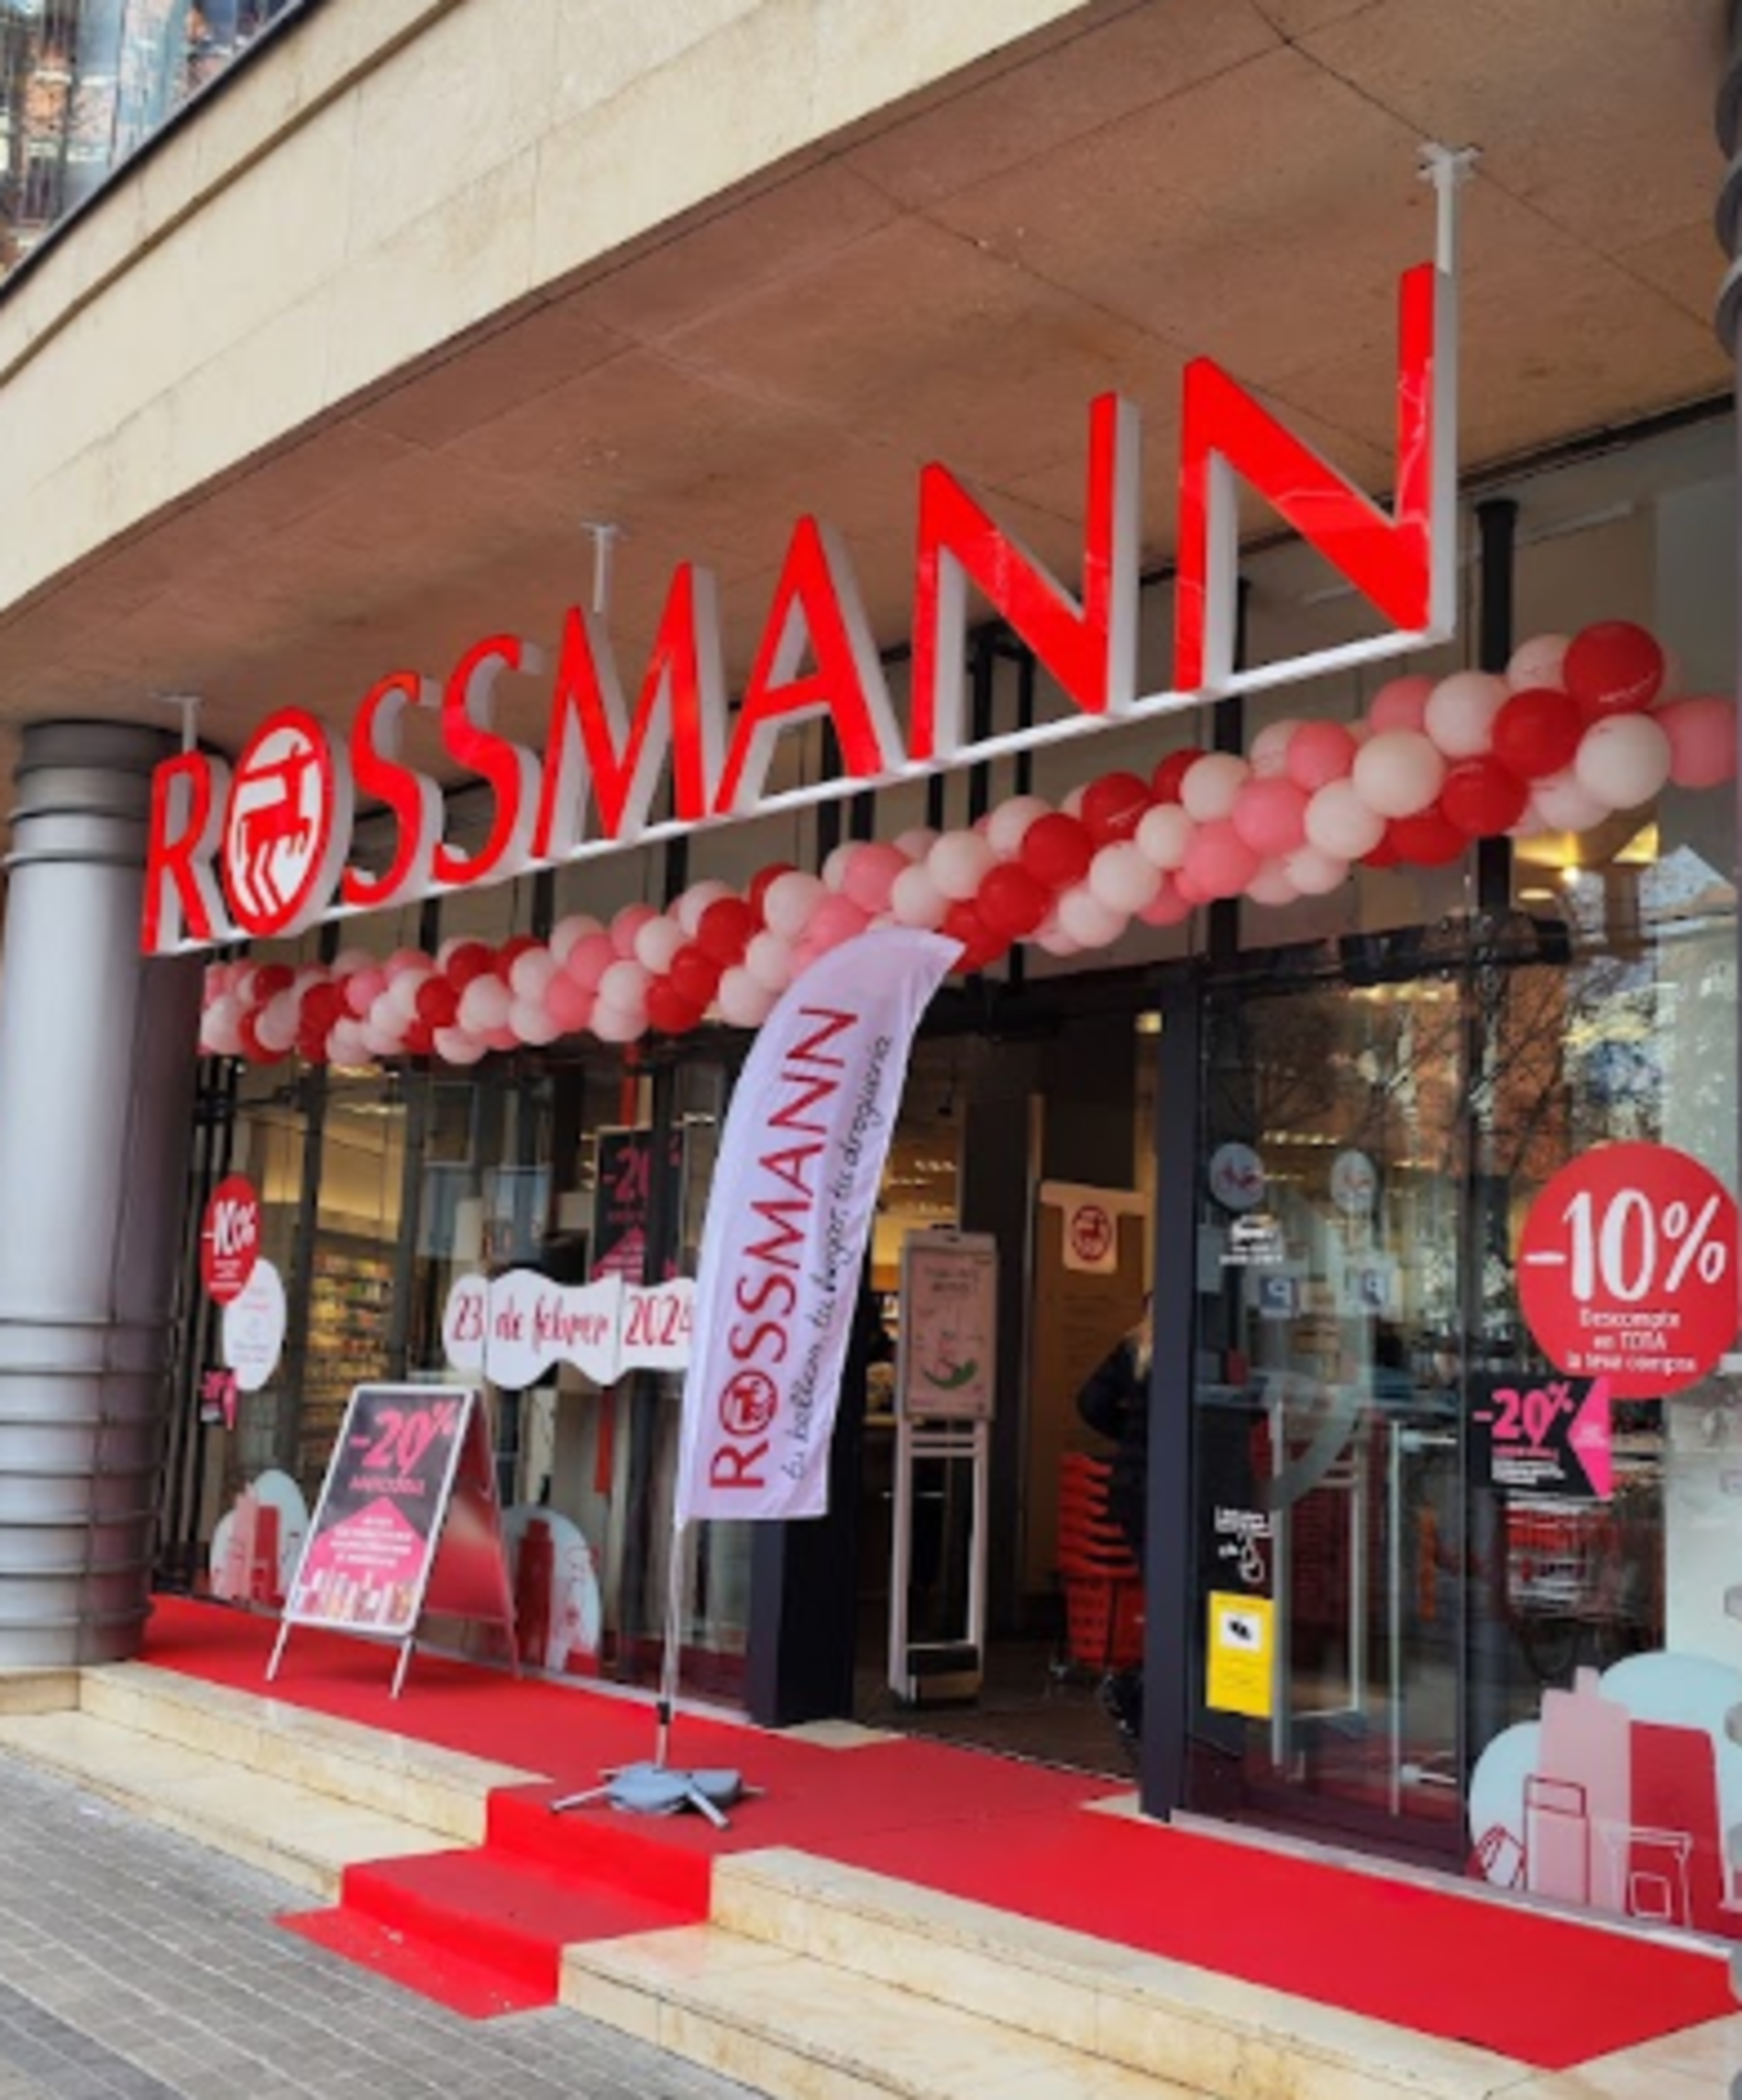 Rossmann arrasa en su aclamado estreno en Barcelona